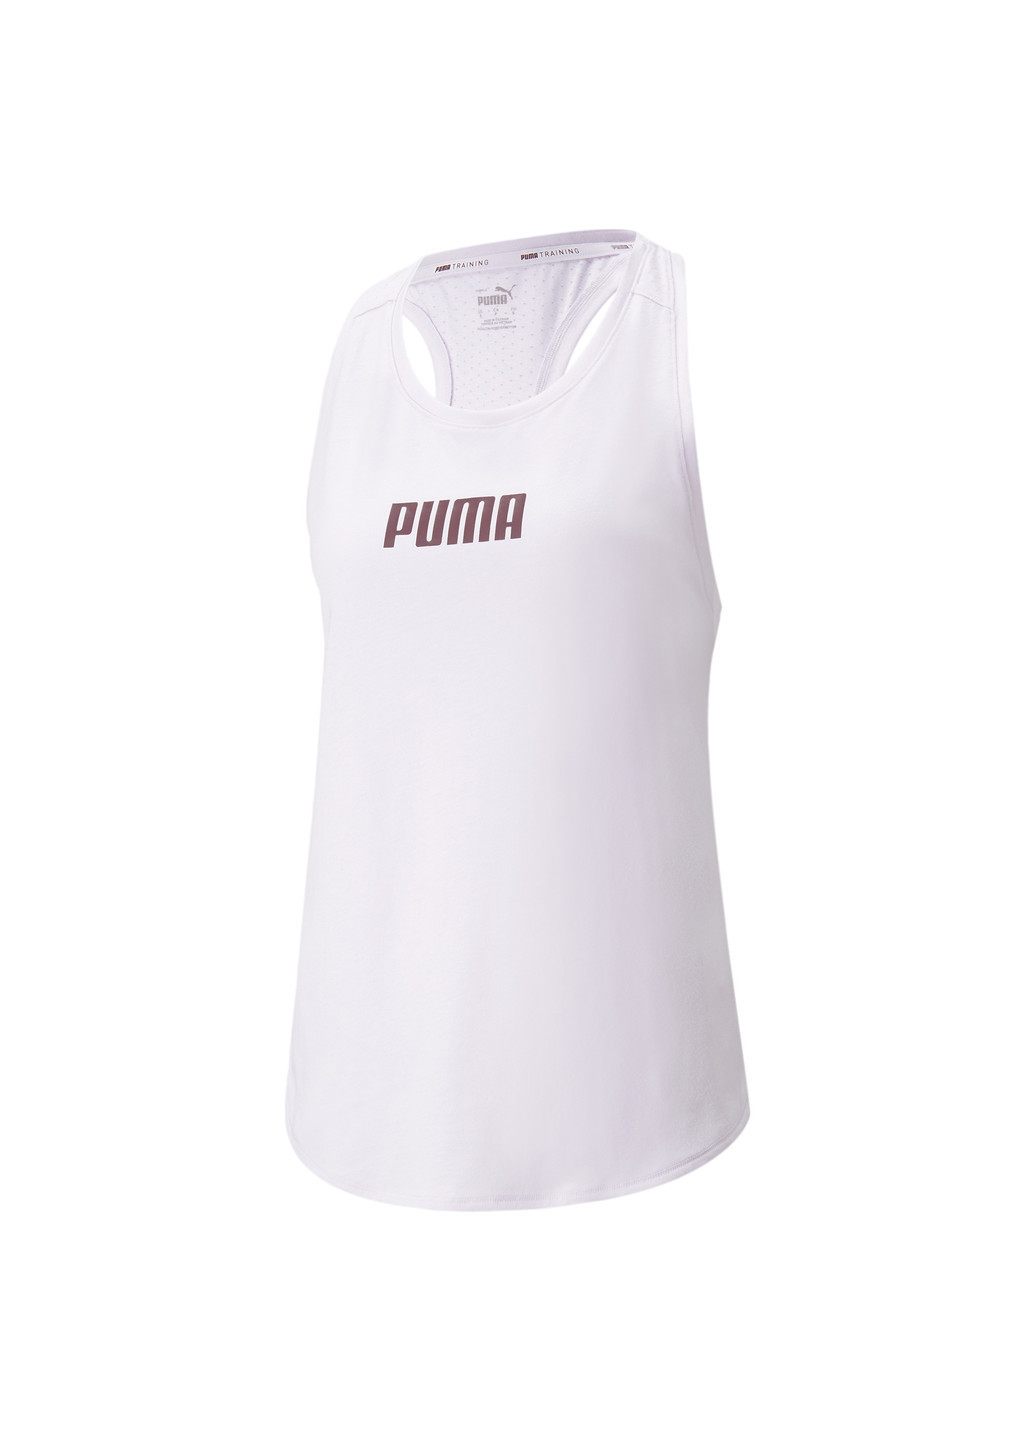 Майка Logo Women's Training Tank Top Puma однотонный пурпурный спортивный хлопок, полиэстер, вискоза